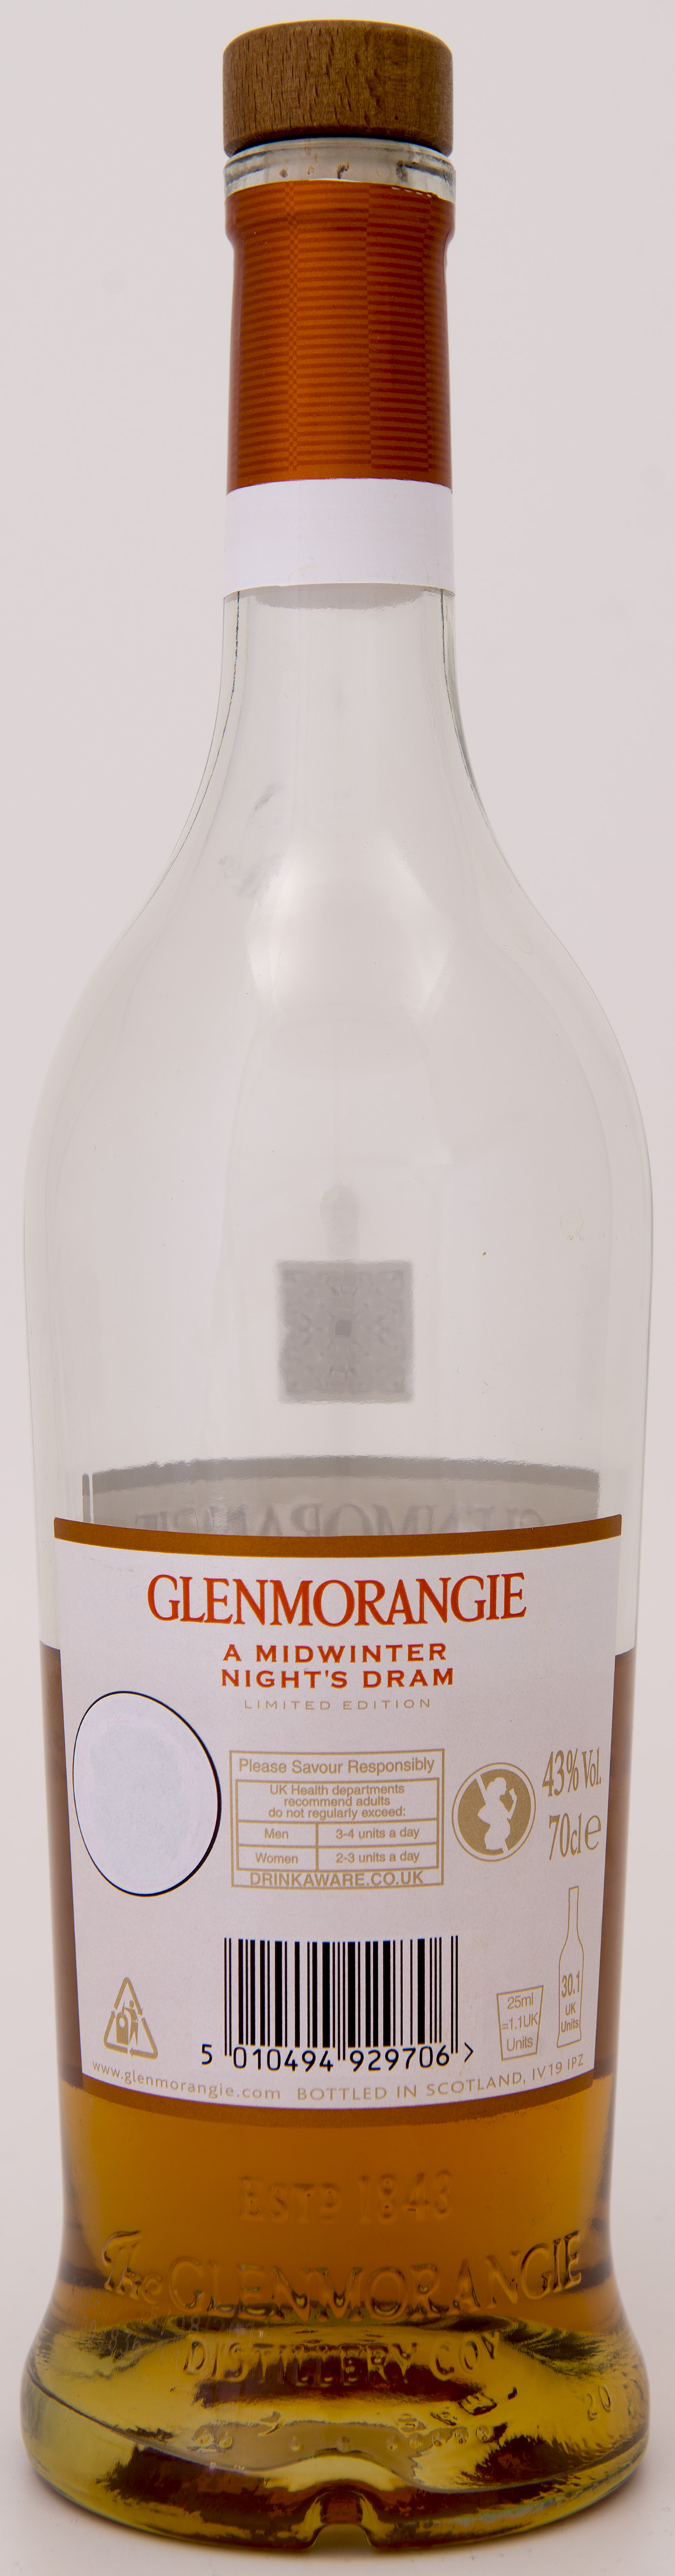 Billede: DSC_1616 - Glenmorangie A Midwinter Nights Dram - bottle back.jpg